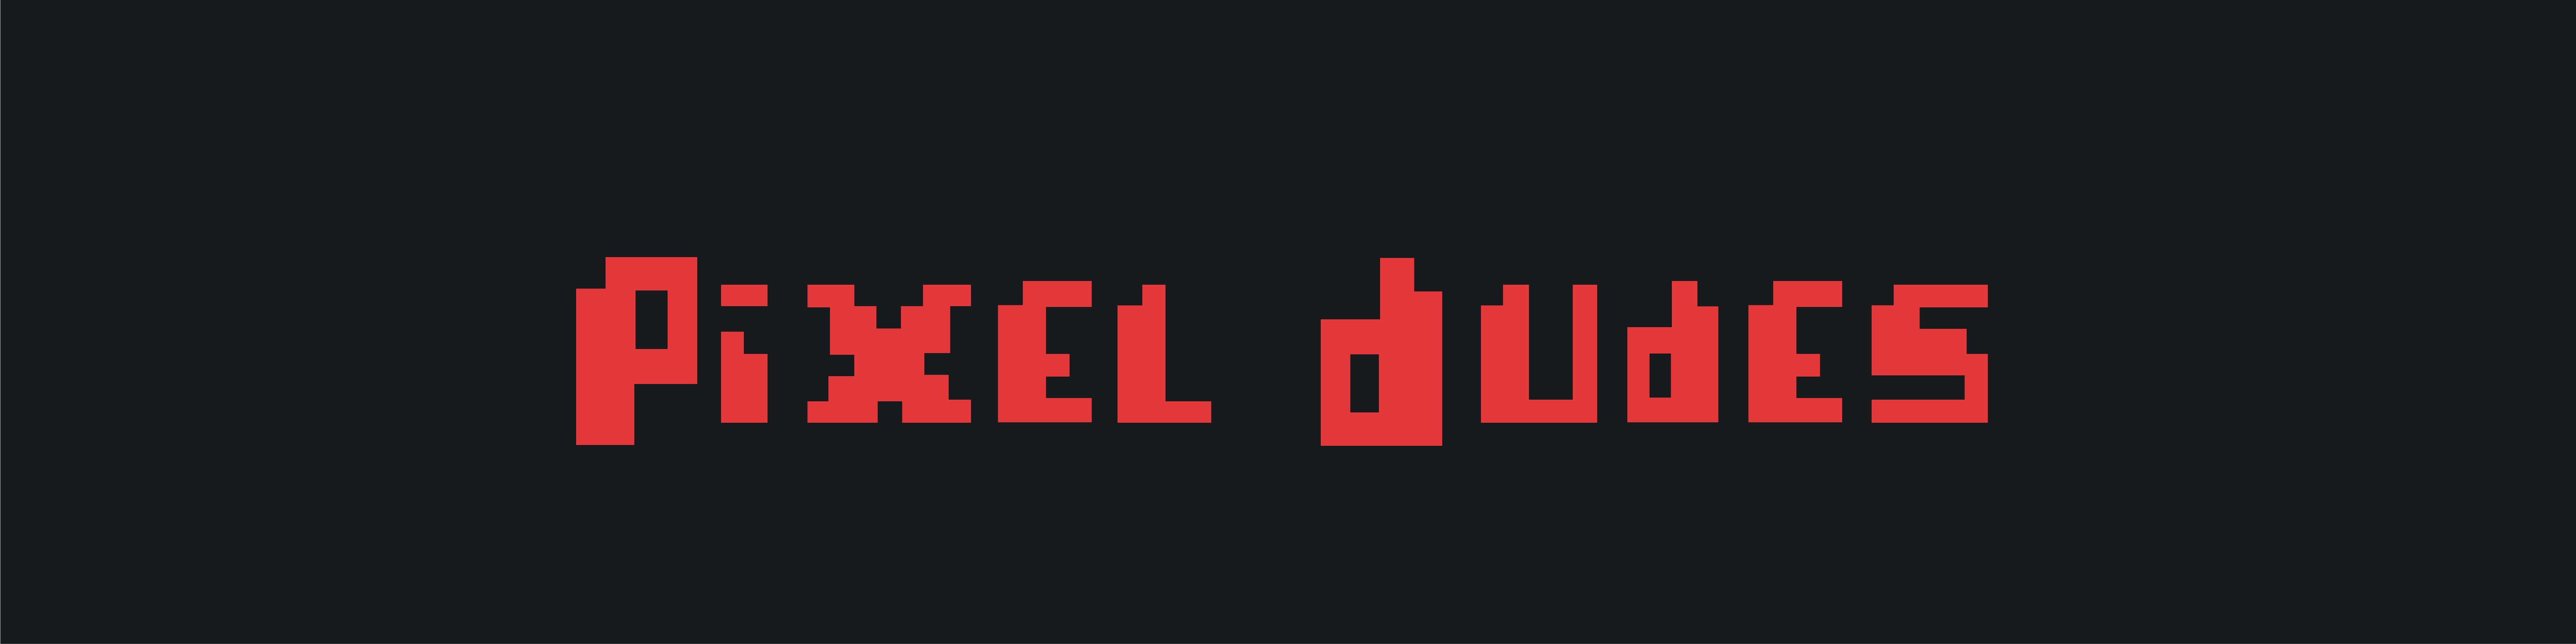 Pixel Dudes banner